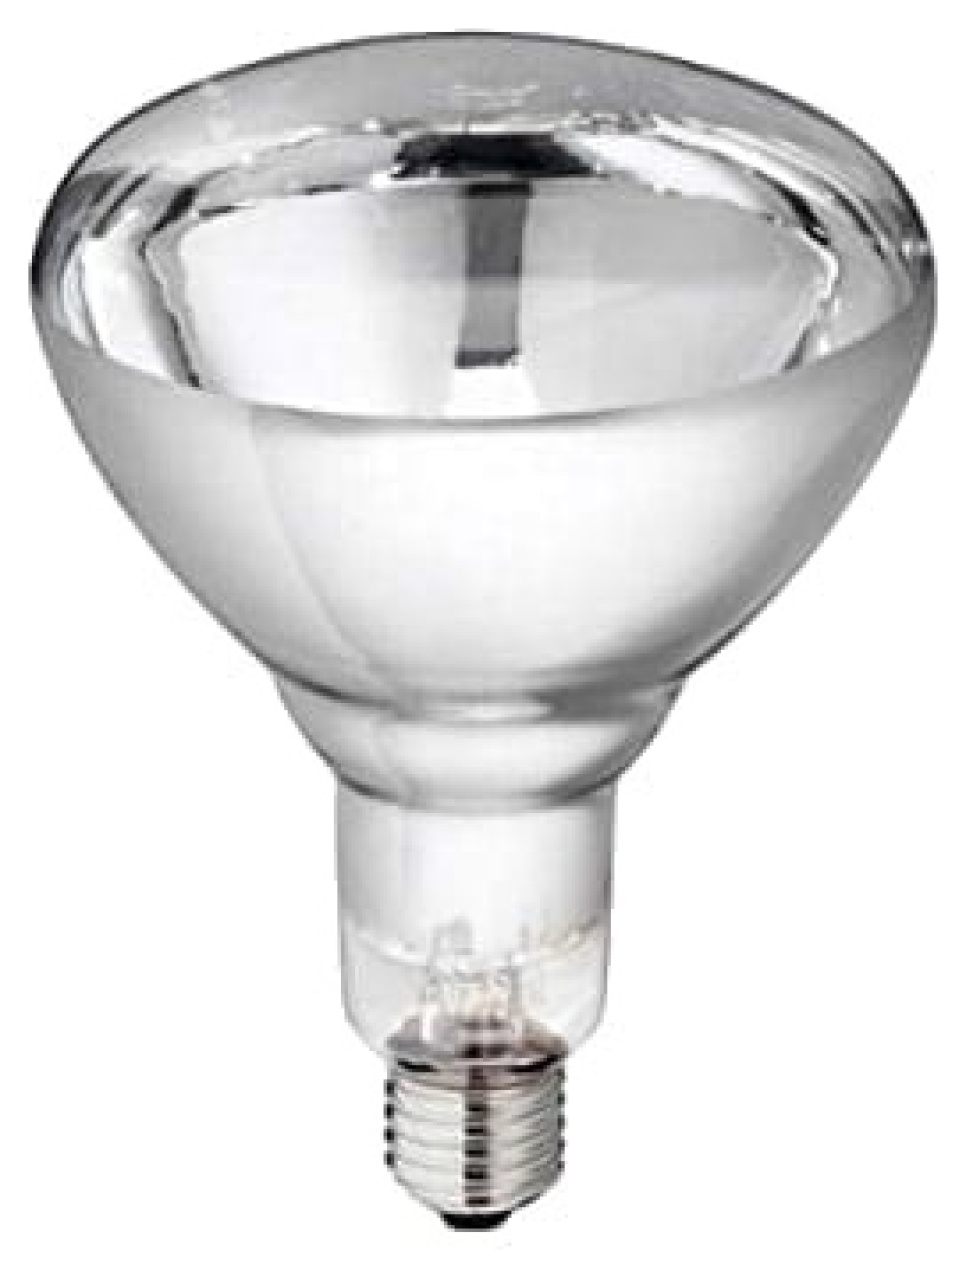 Ampoule Philips IR Blanc 250 W dans le groupe Électroménager / Réchauffer et cuire / Lampe chauffante l\'adresse The Kitchen Lab (1531-16614)